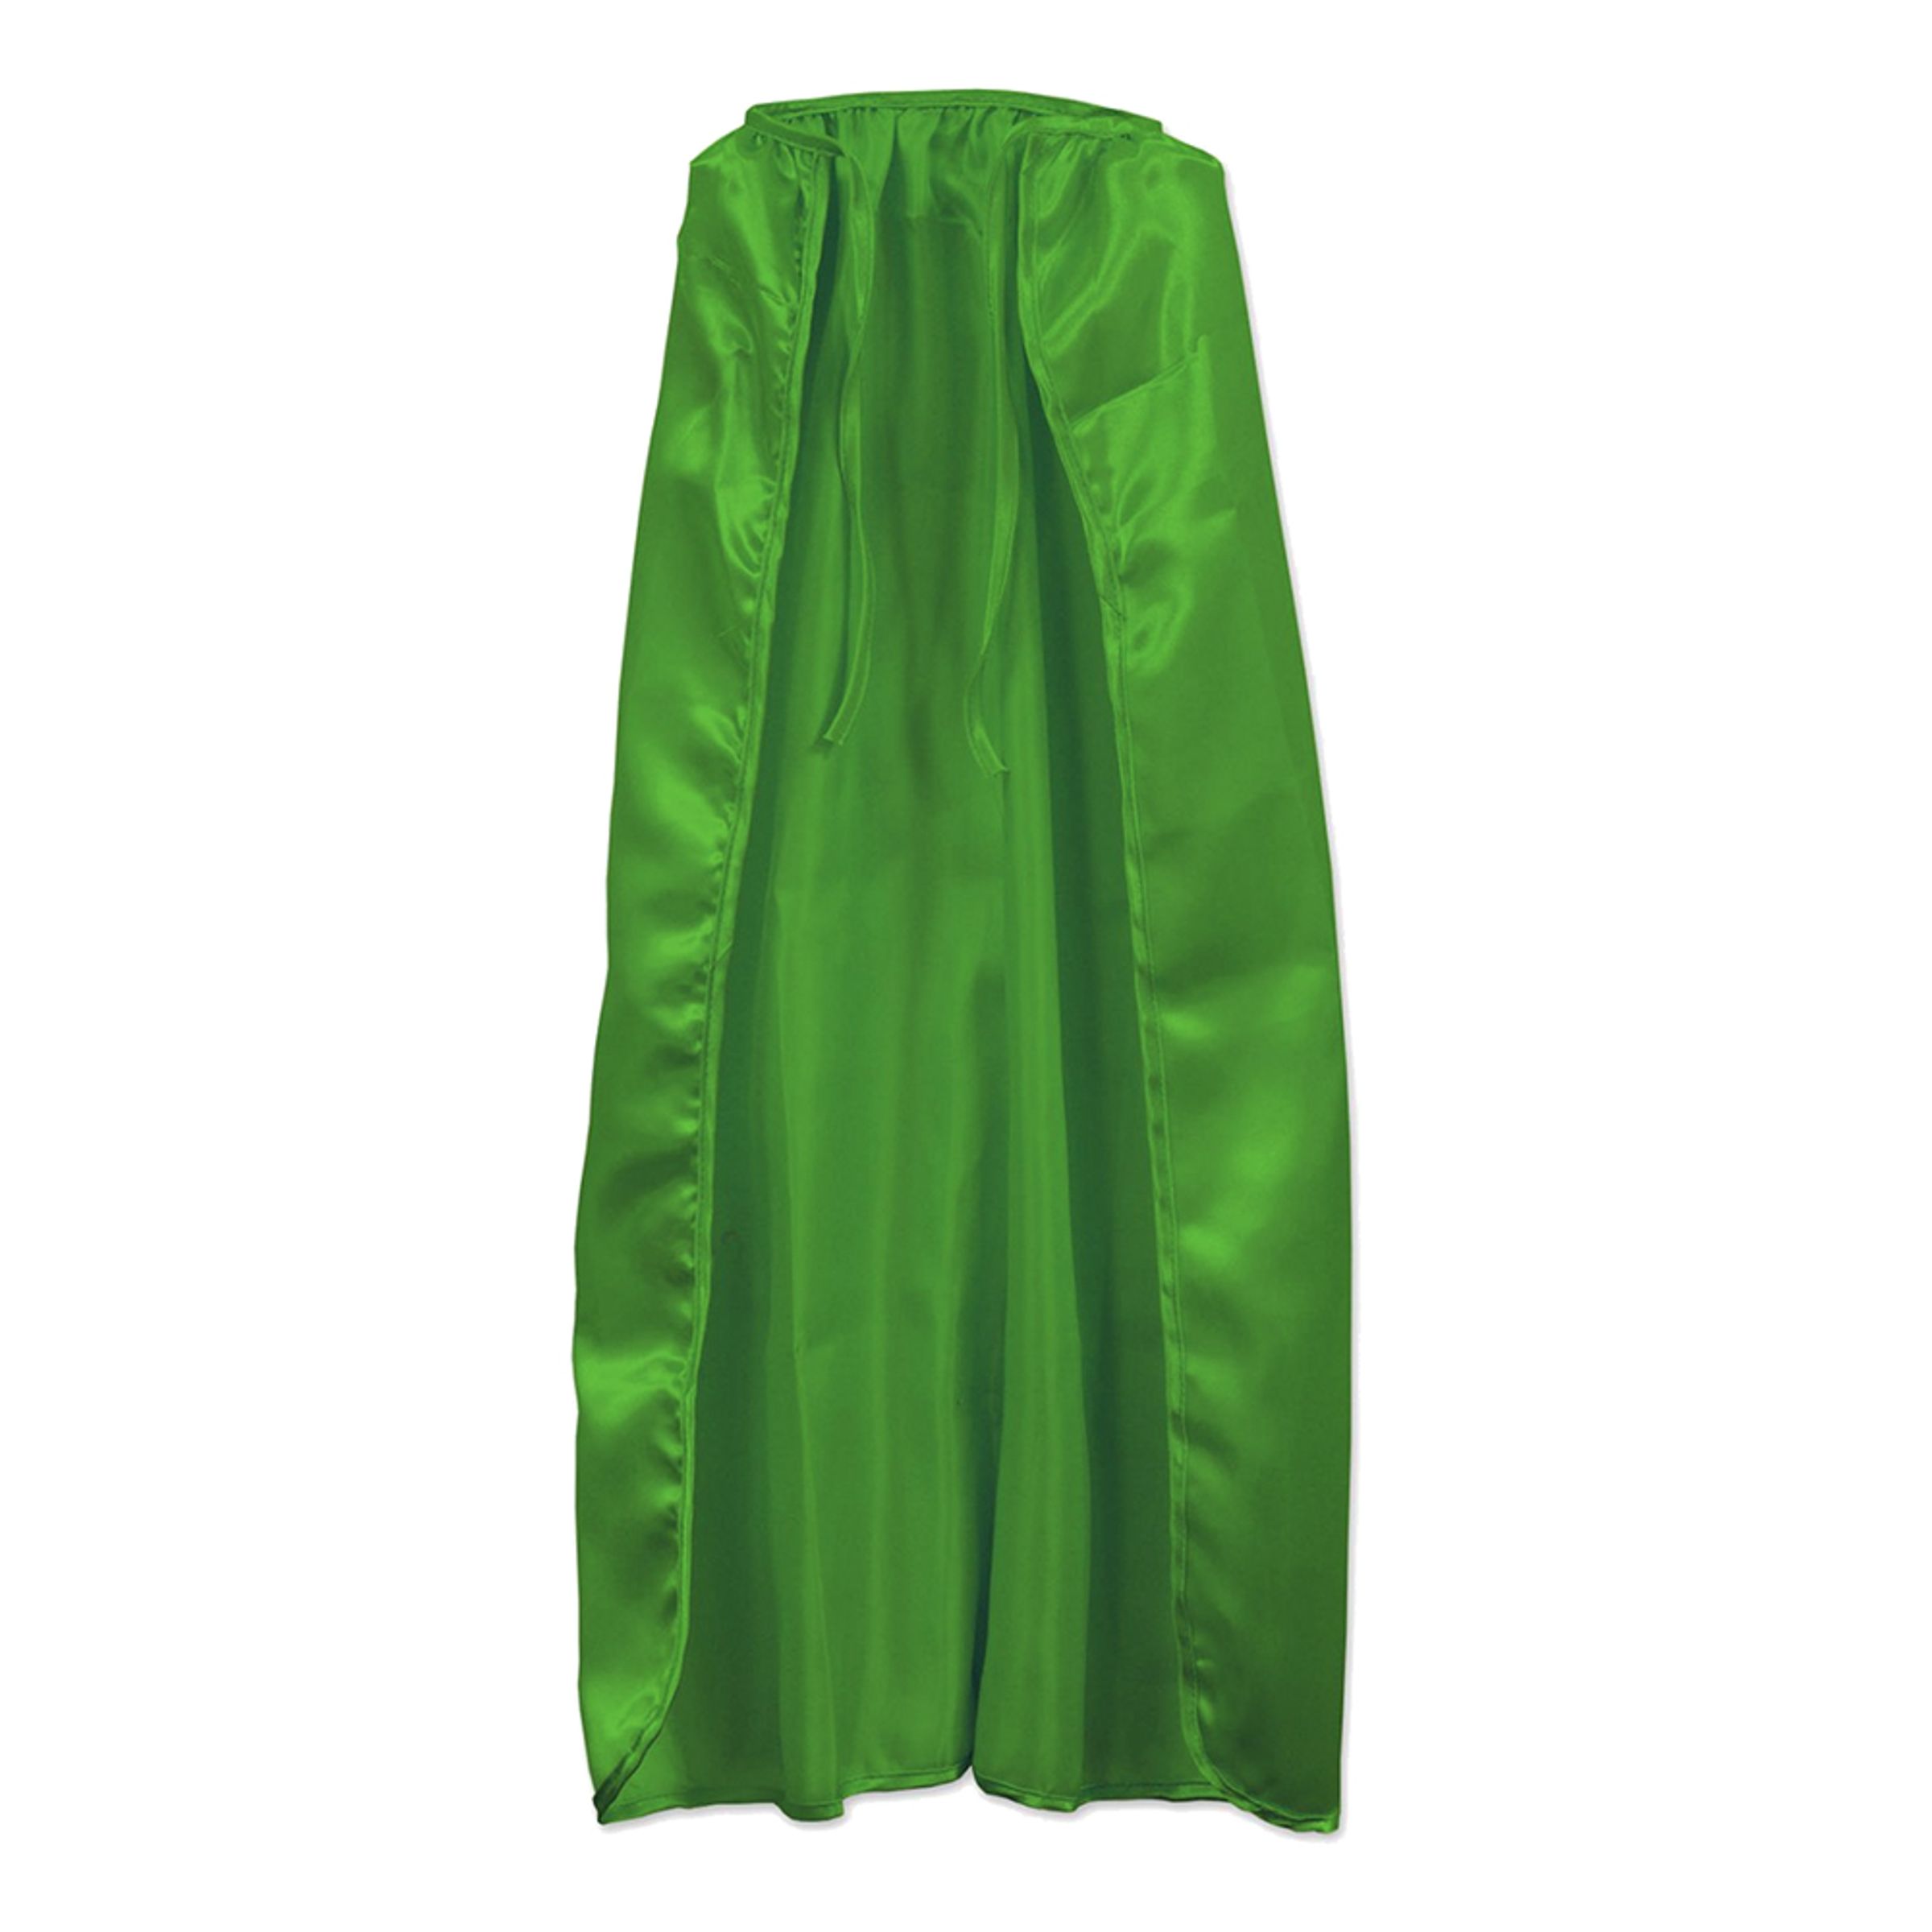 Mantel Grön för Barn - One size